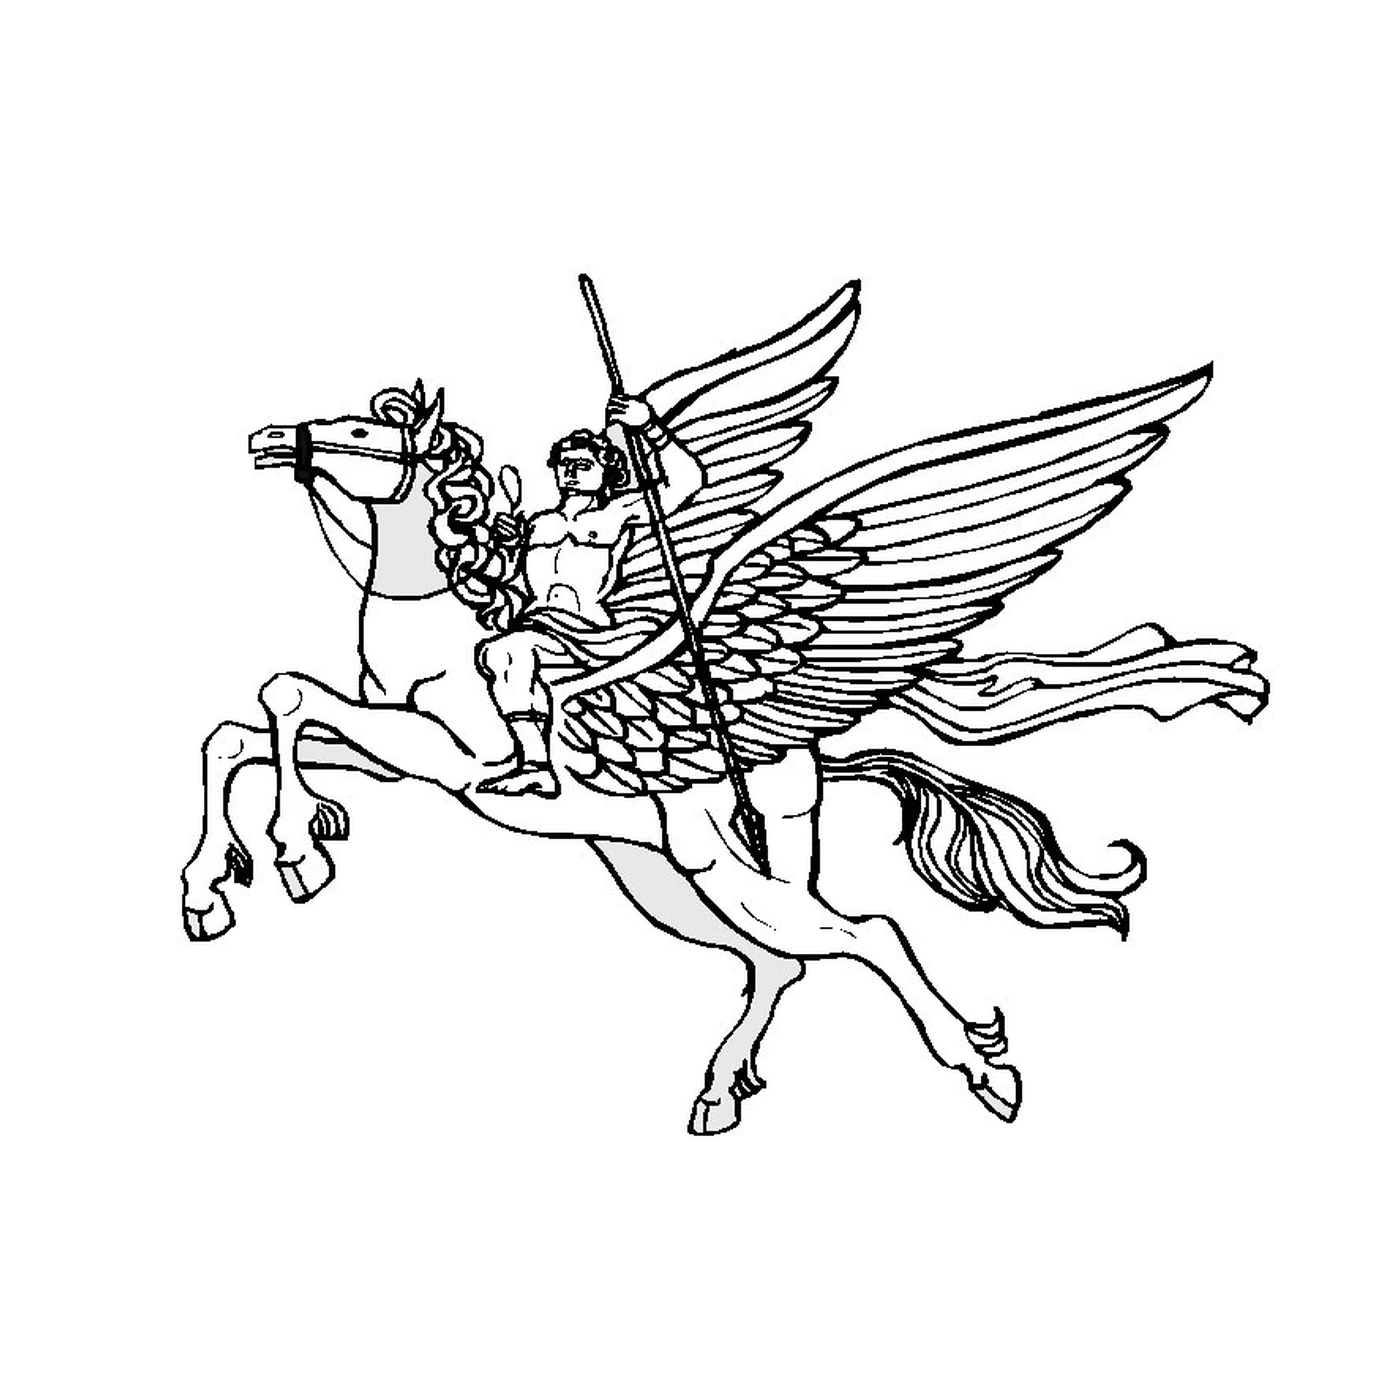  Hombre montando un caballo alado 